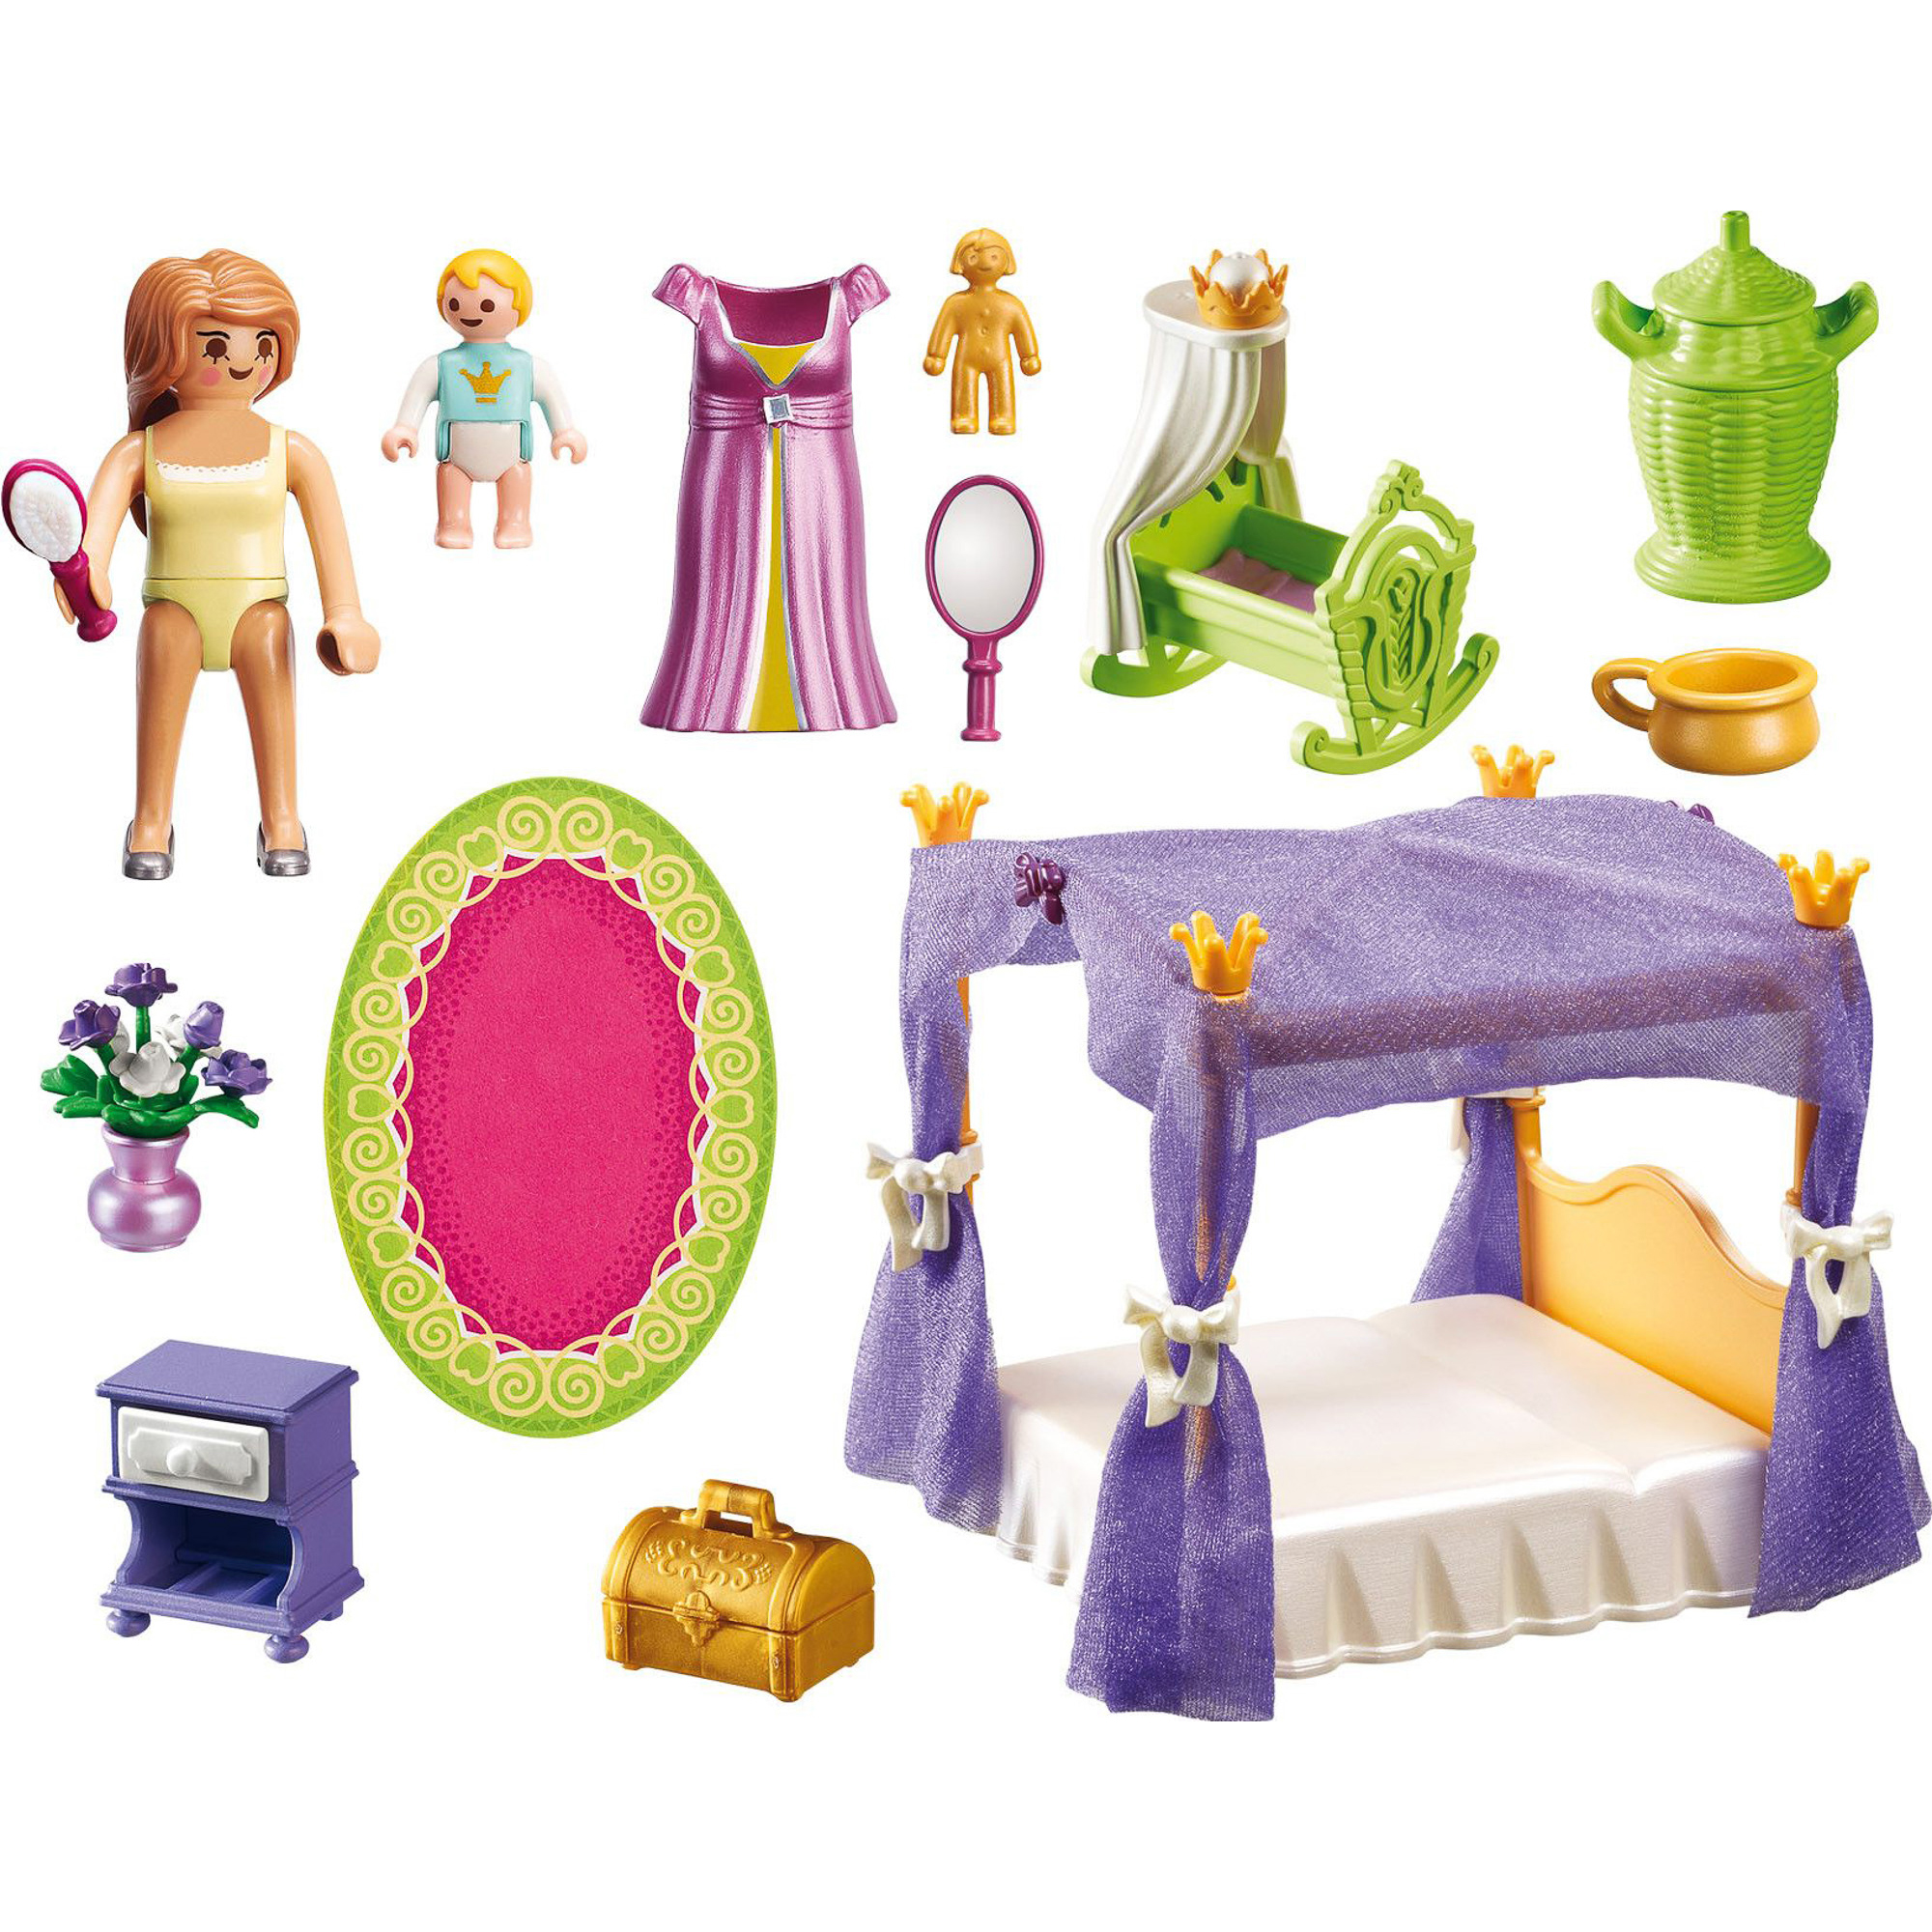 фото Игровой набор playmobil покои принцессы с колыбелью